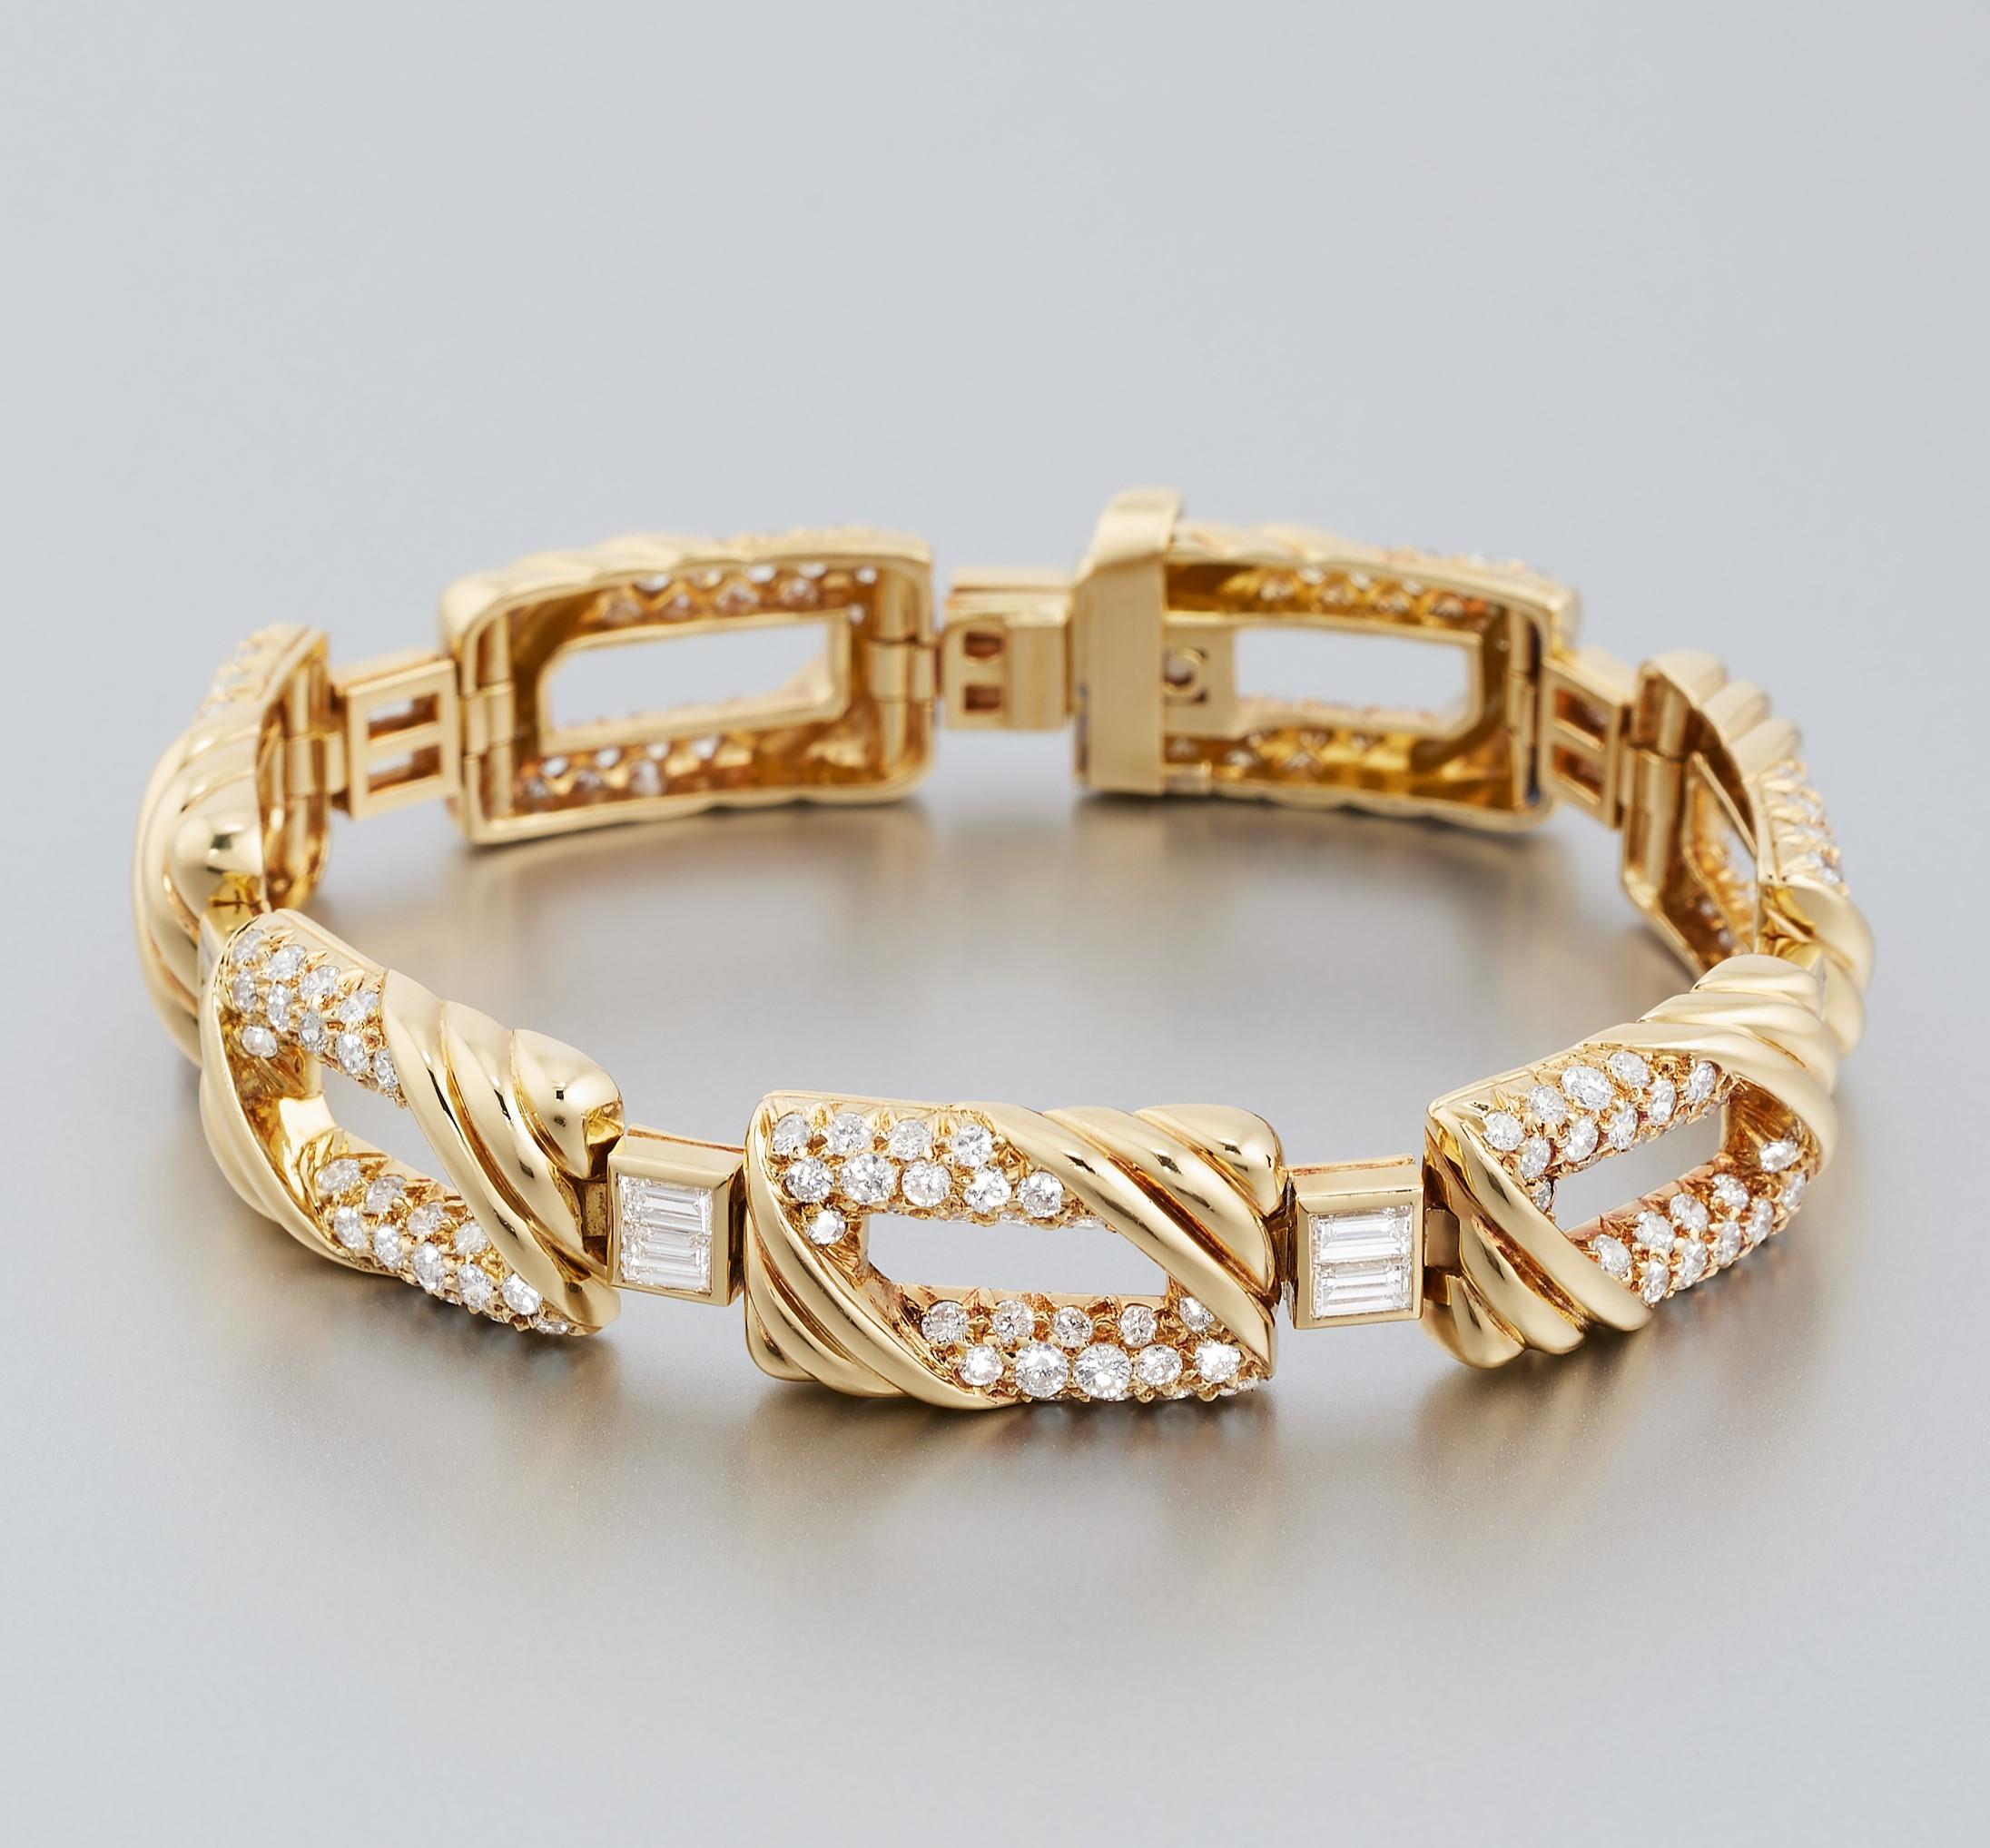 Exquis bracelet vintage en or jaune 18 carats serti de diamants de Mauboussin Paris. Le bracelet est orné d'environ 7 carats de diamants étincelants de couleur et de pureté élevées (F à G / VVS à VS) sertis dans de l'or jaune 18 carats scintillant.